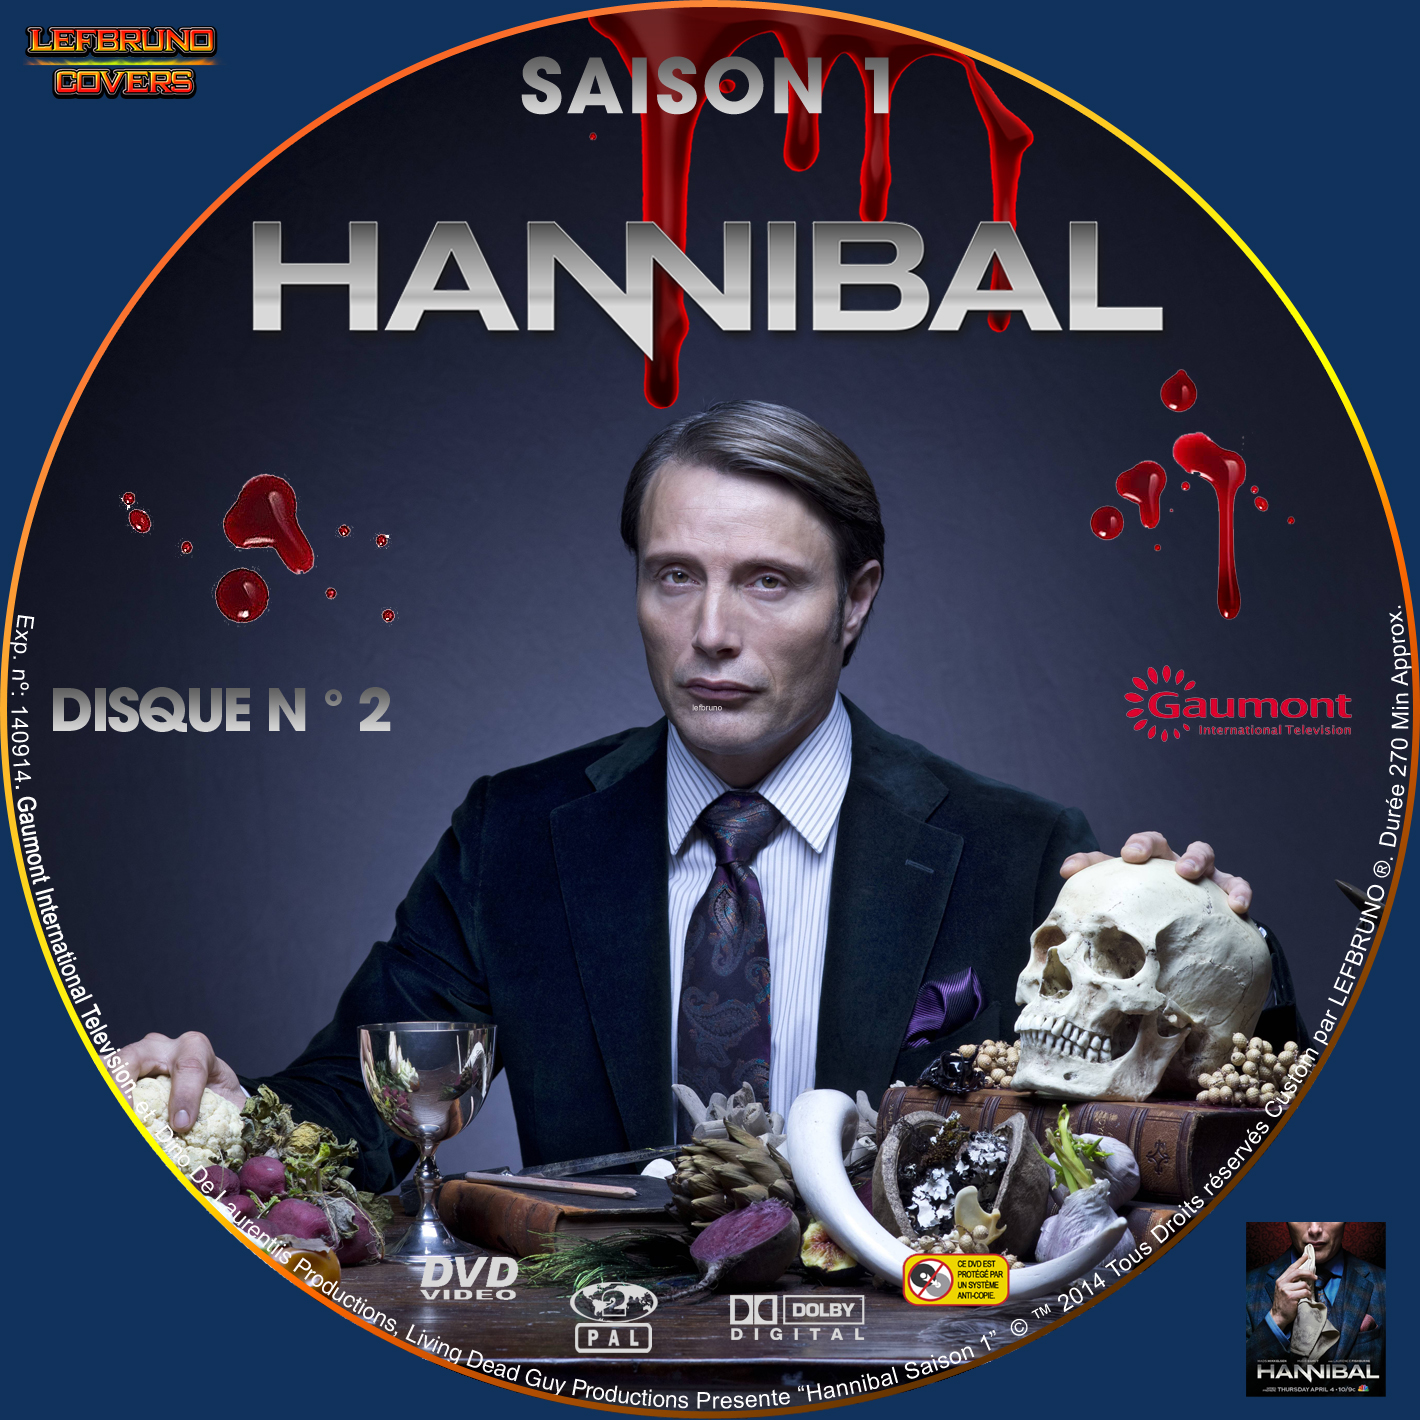 Hannibal Saison 1 DISC 2 custom